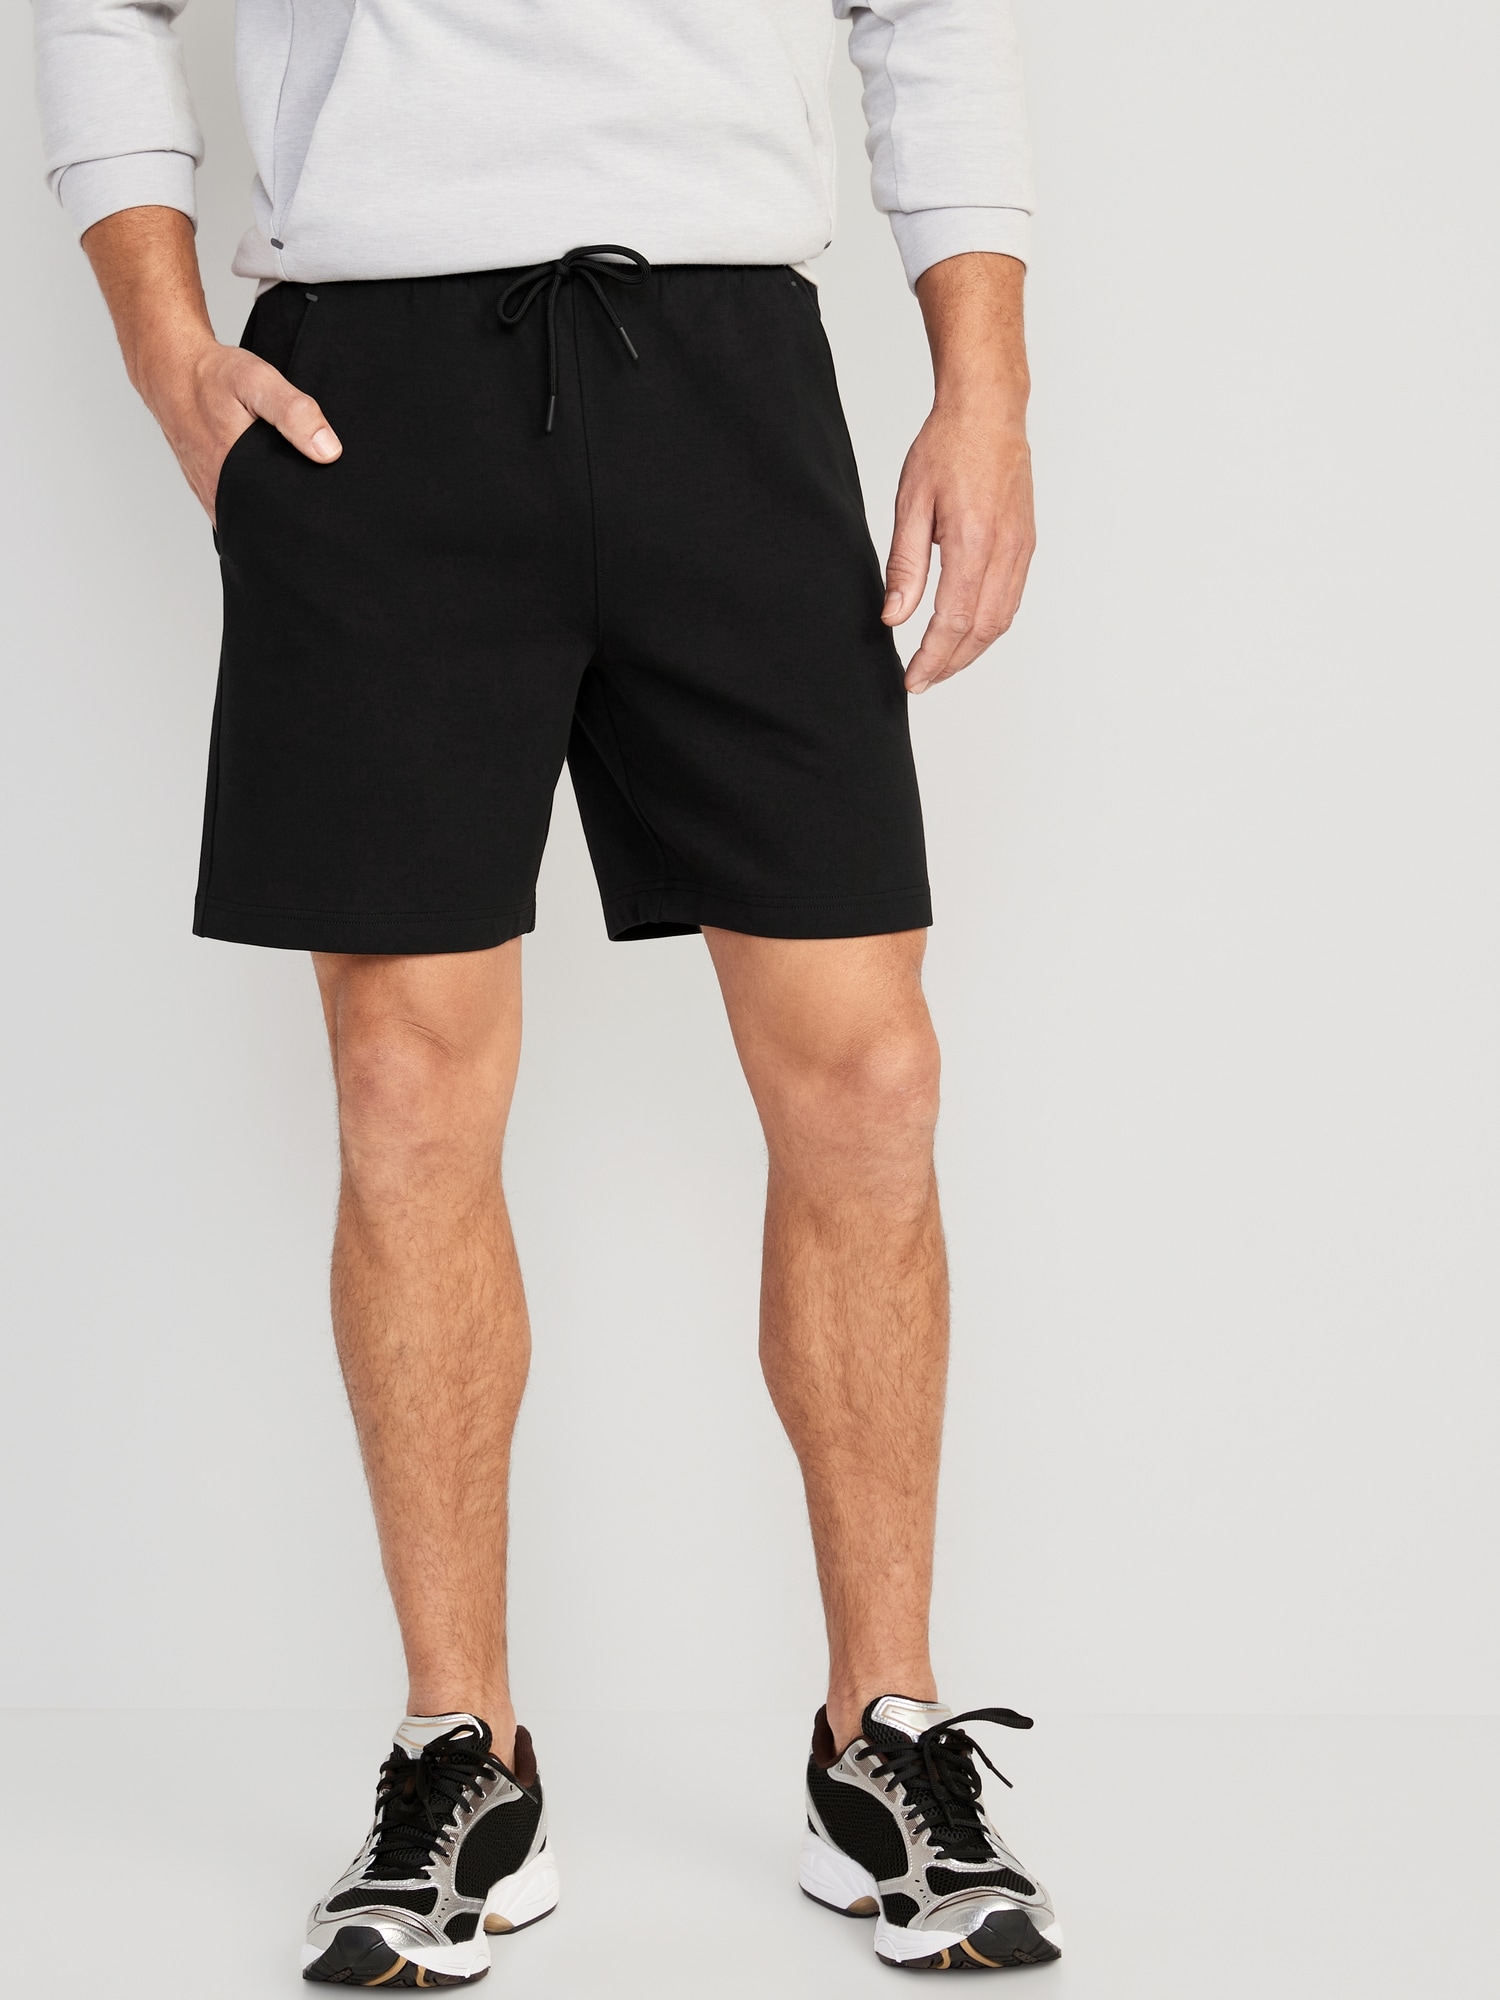 Dynamic Fleece Sweat Shorts -- 7-inch inseam